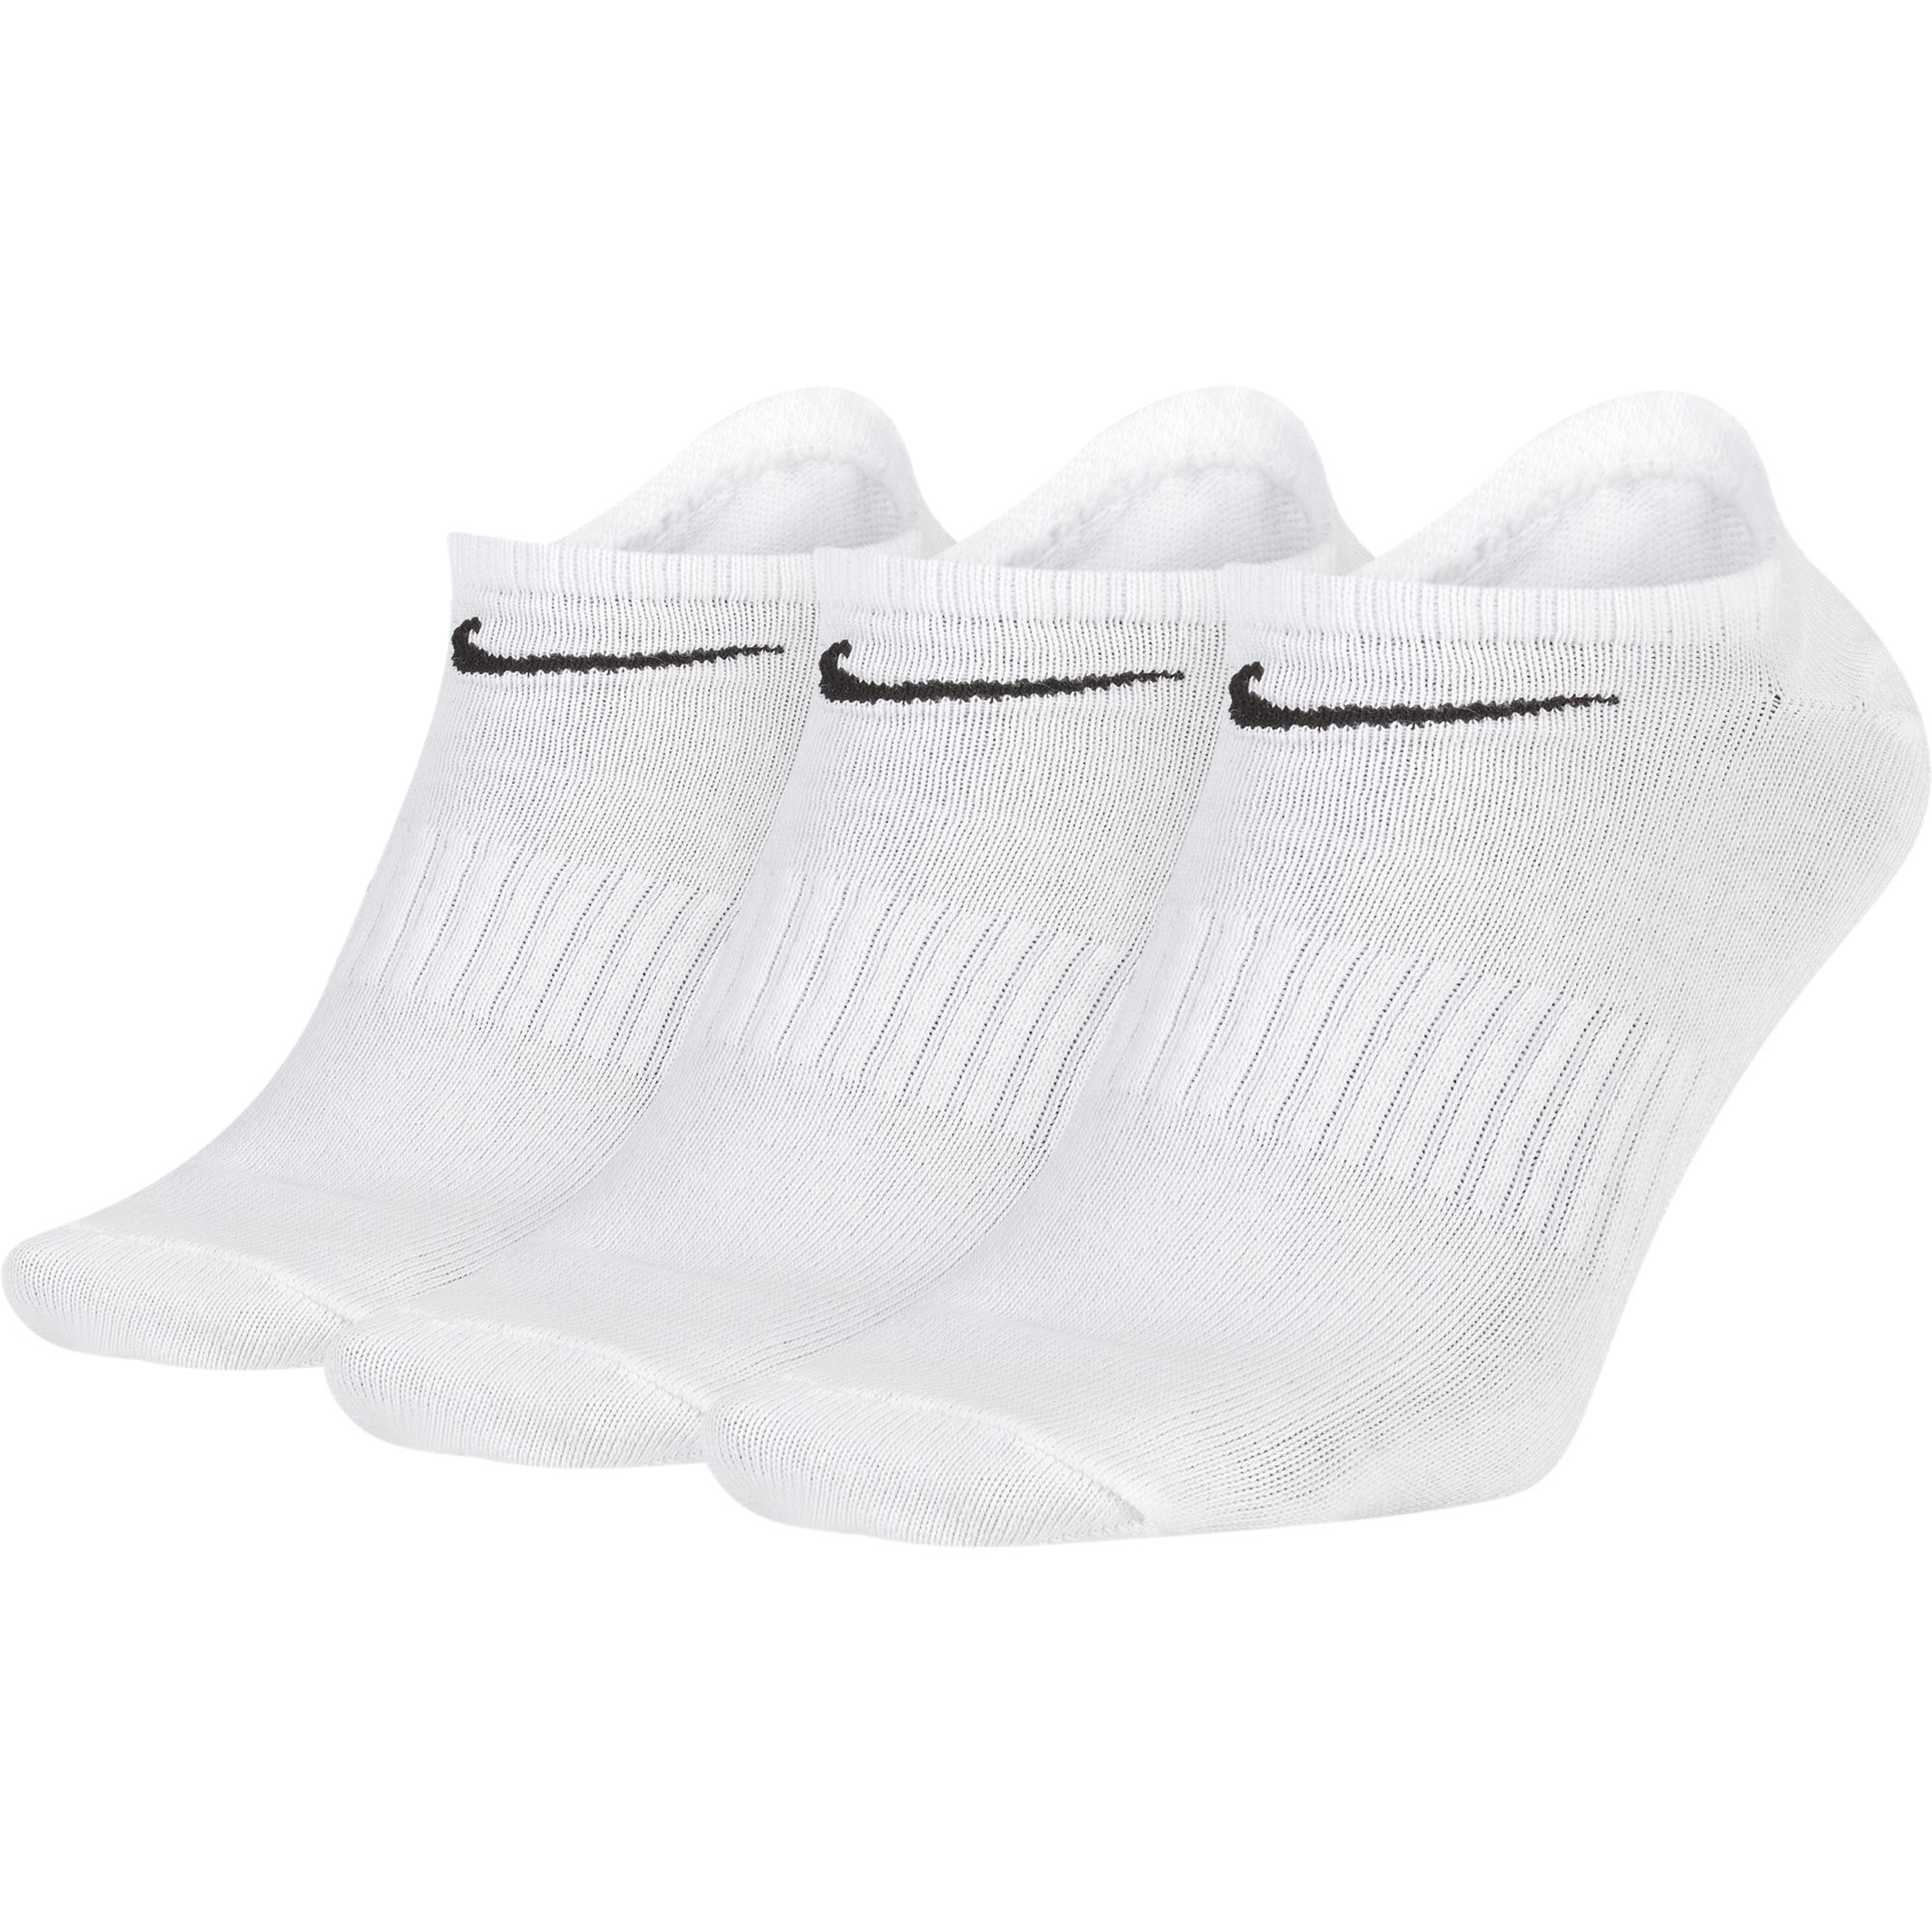 Носки Nike Everyday Lightweight - картинка